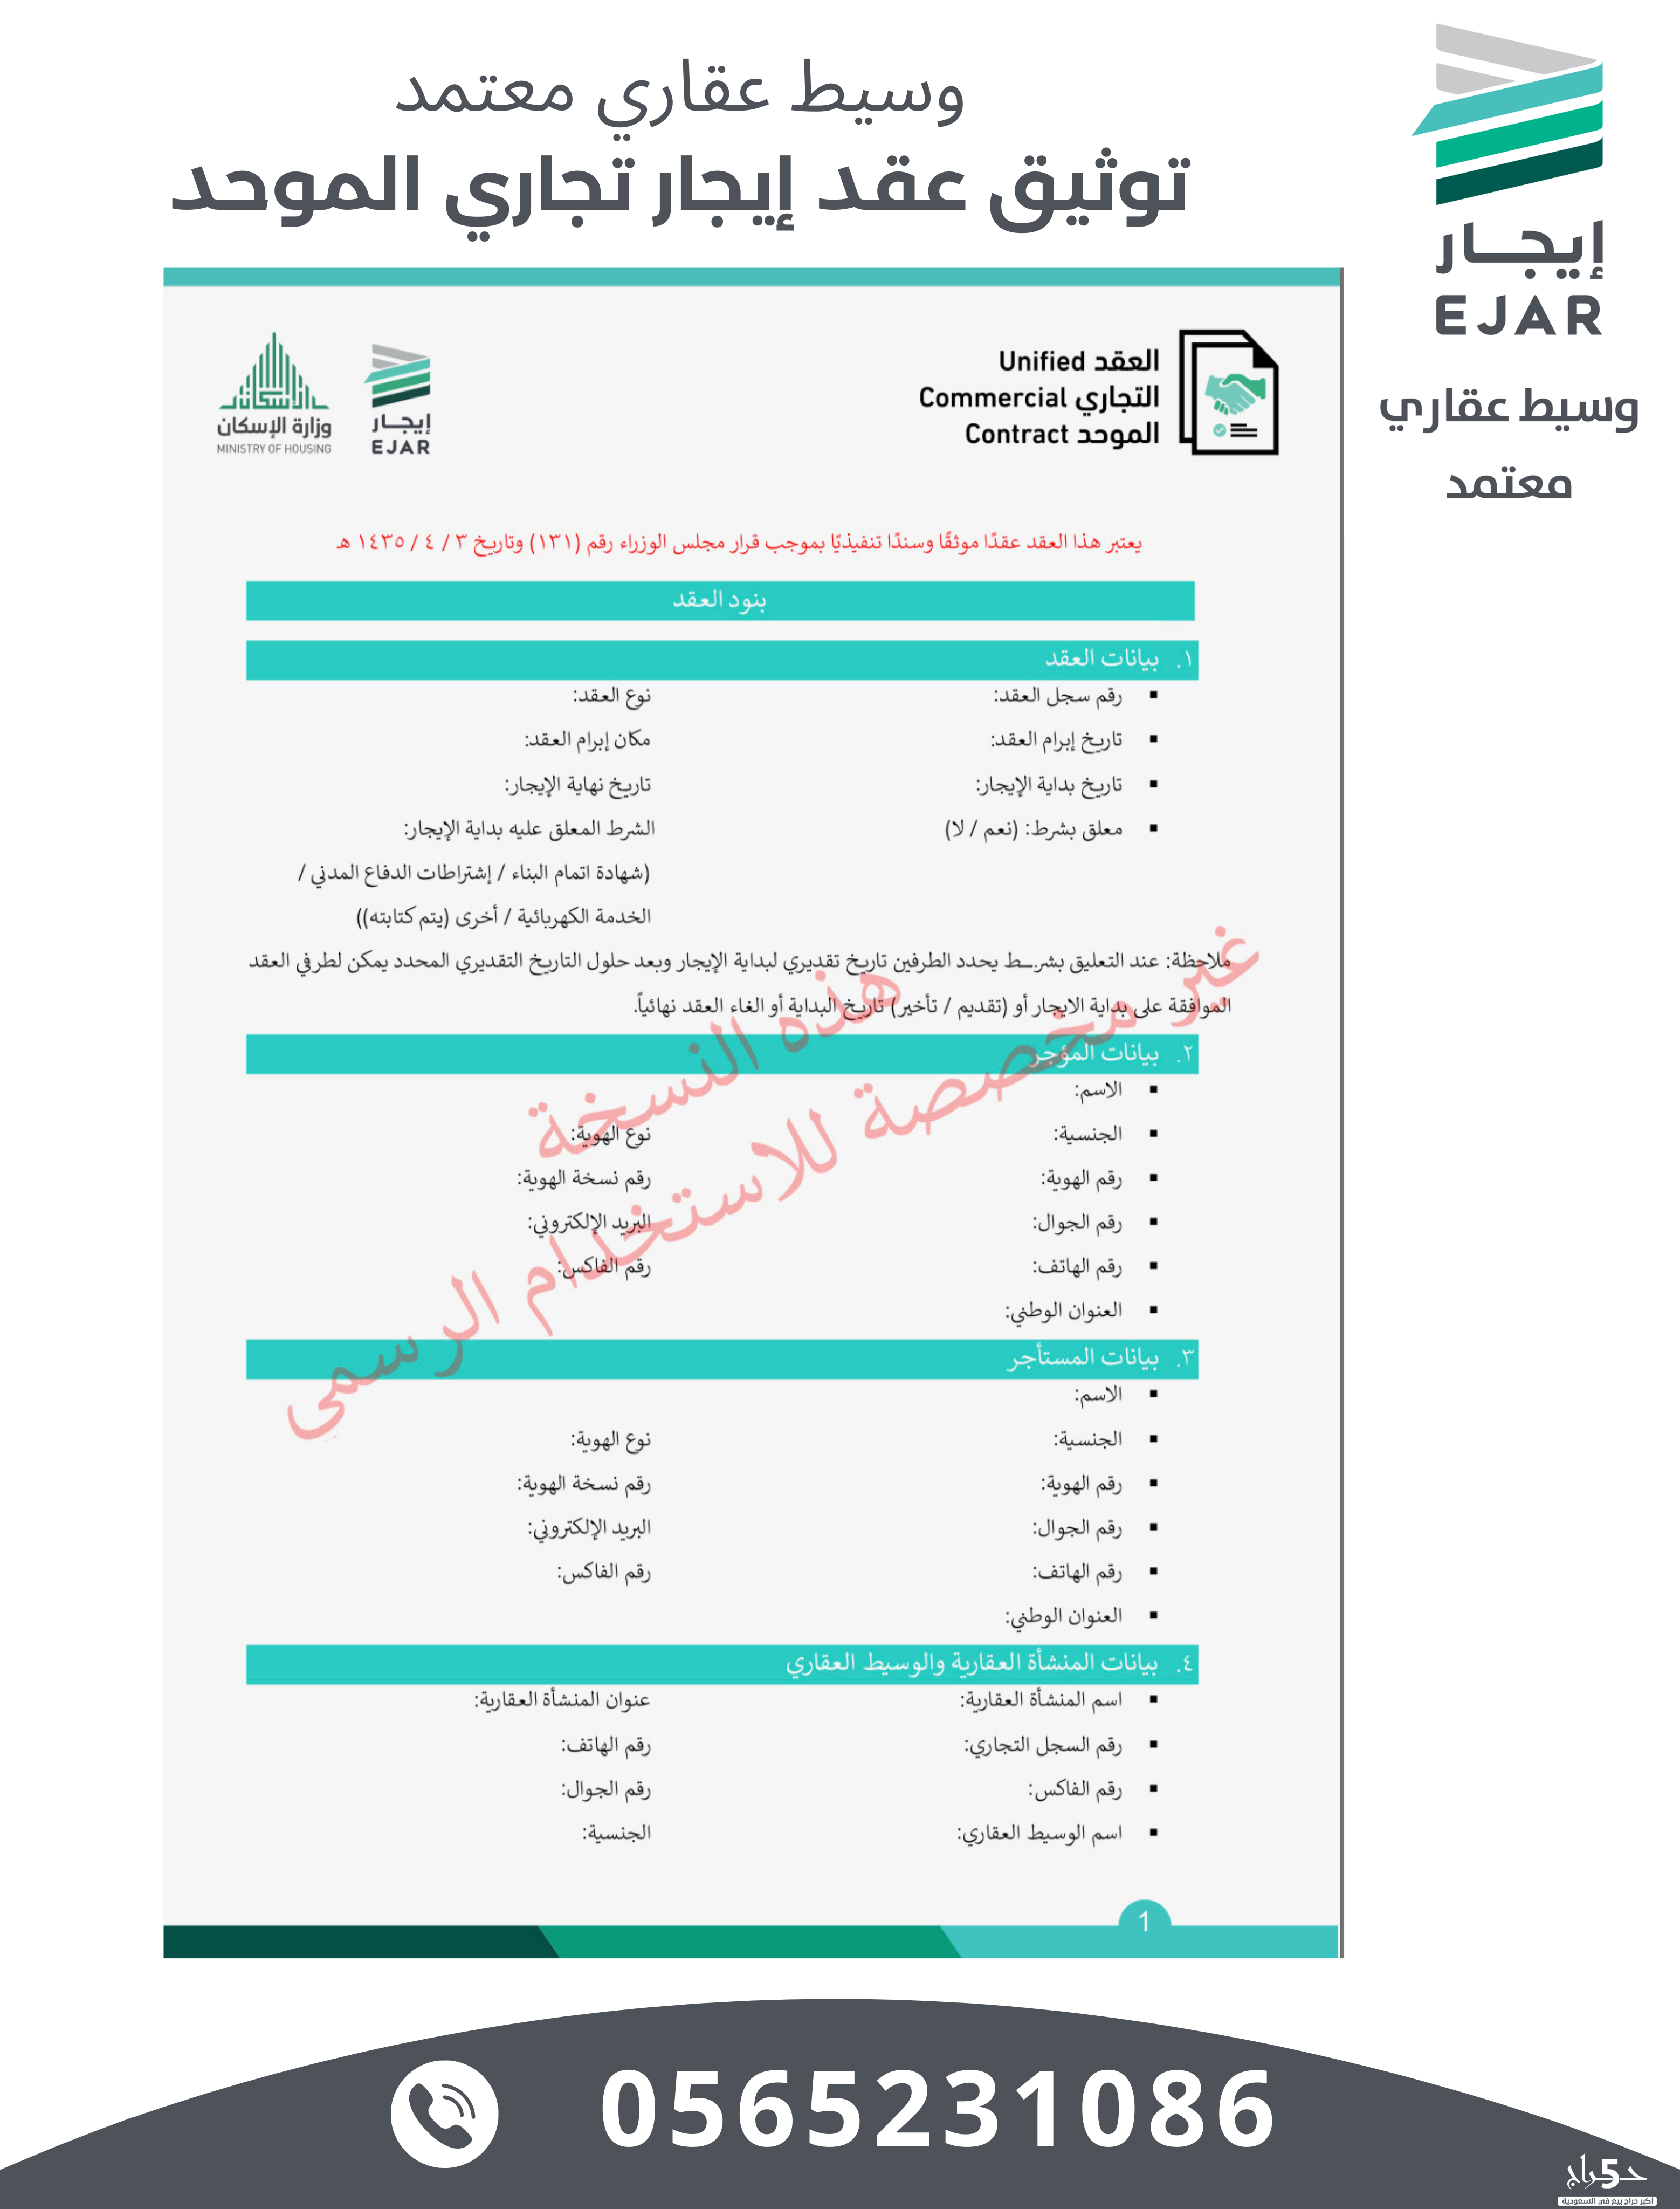 تسجيل عقد ايجار الكتروني تجاري - مكتب عقار - الرياض